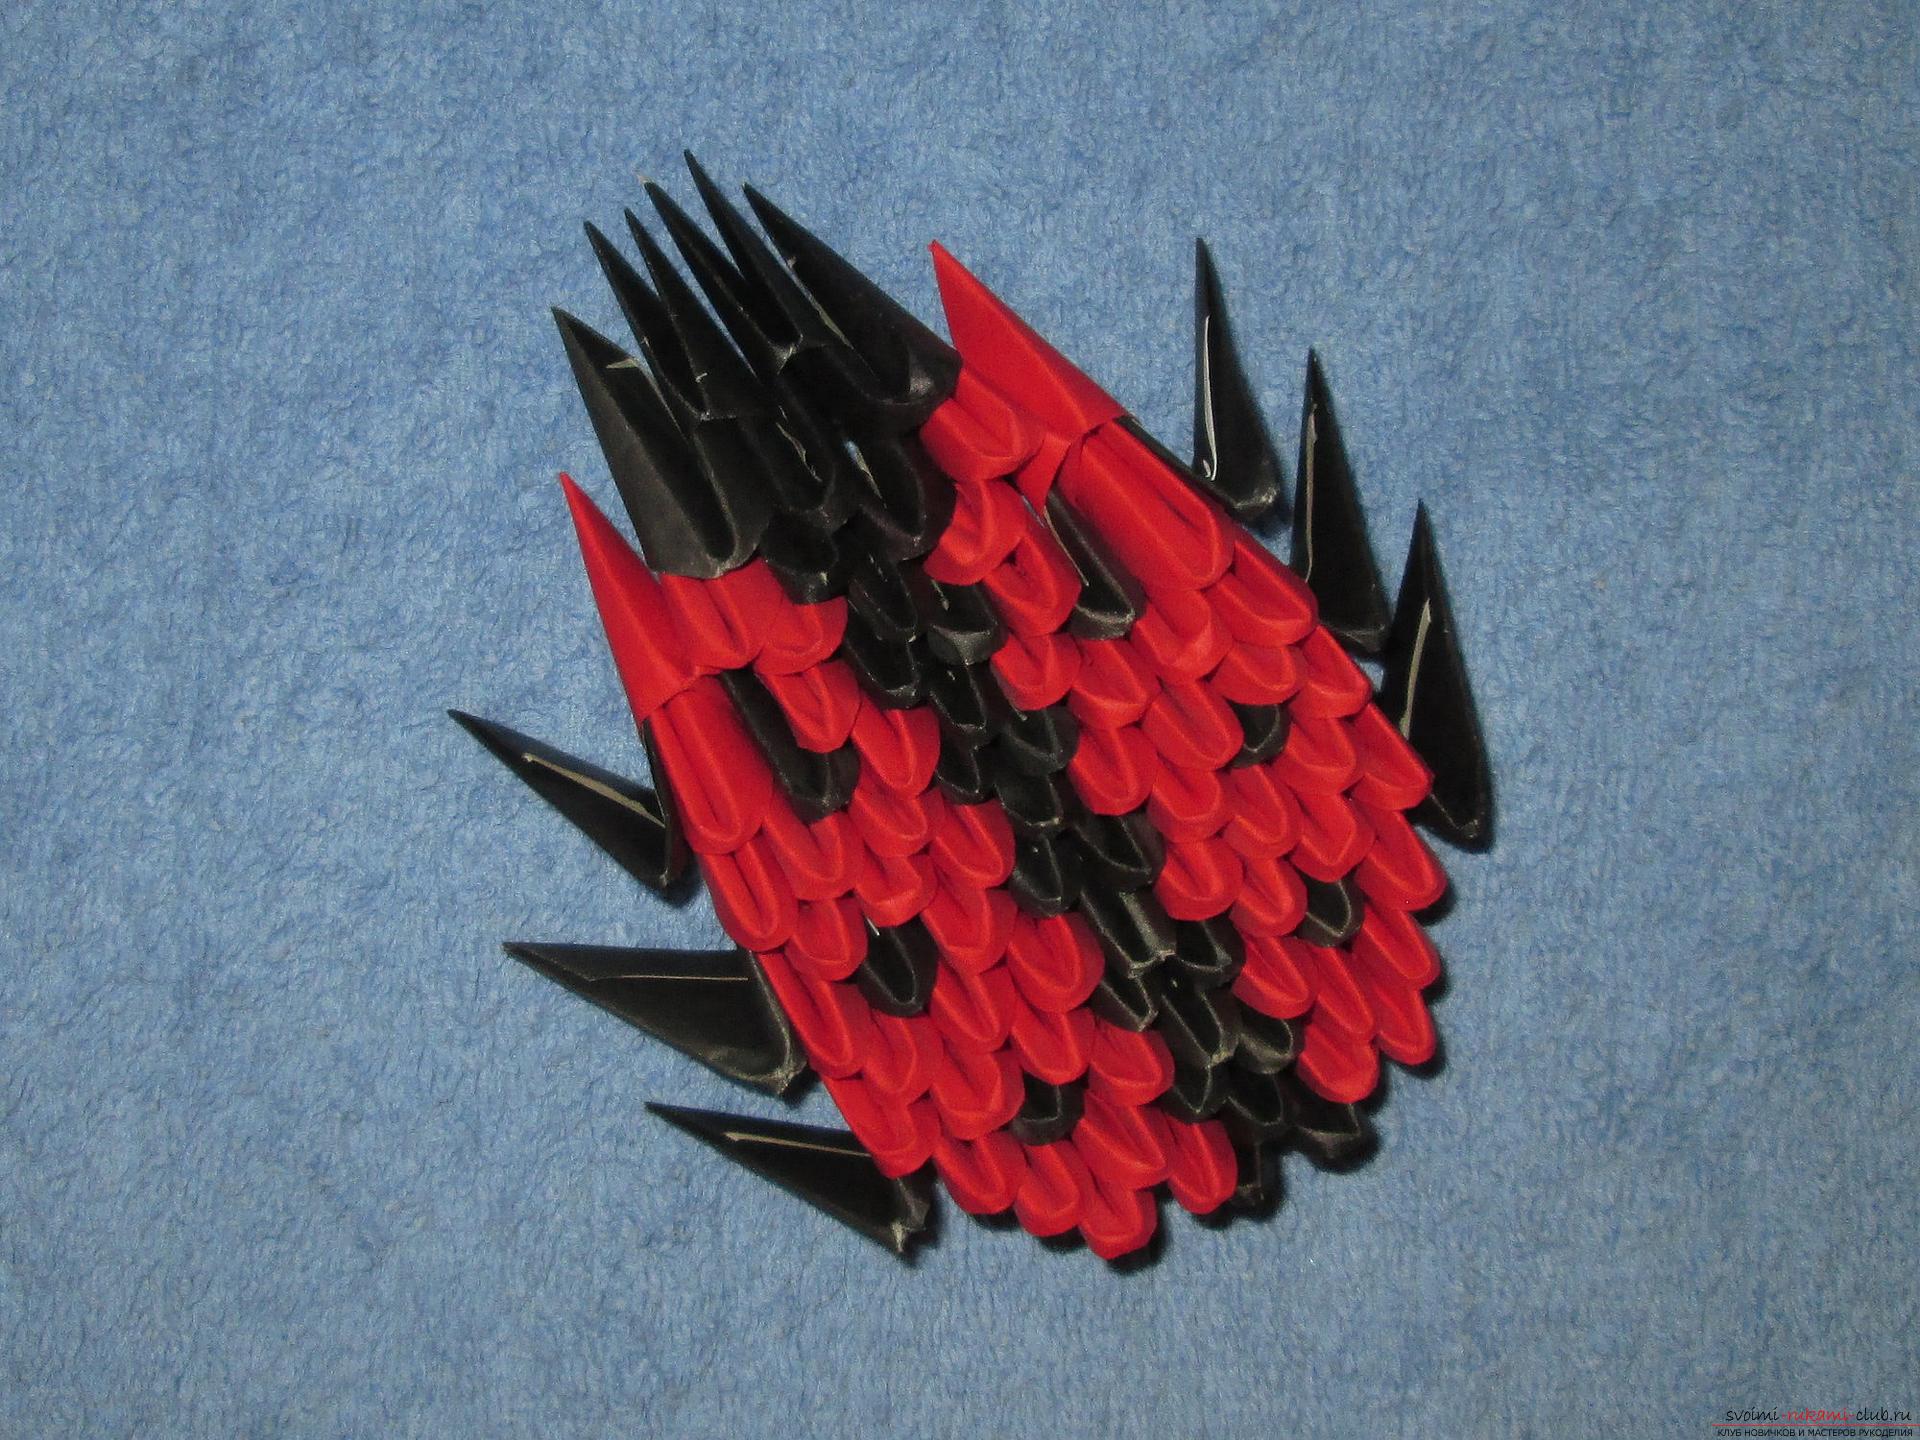 Этот мастер-класс расскажет как сделать модульное оригами из бумаги - божью коровку.. Фото №1